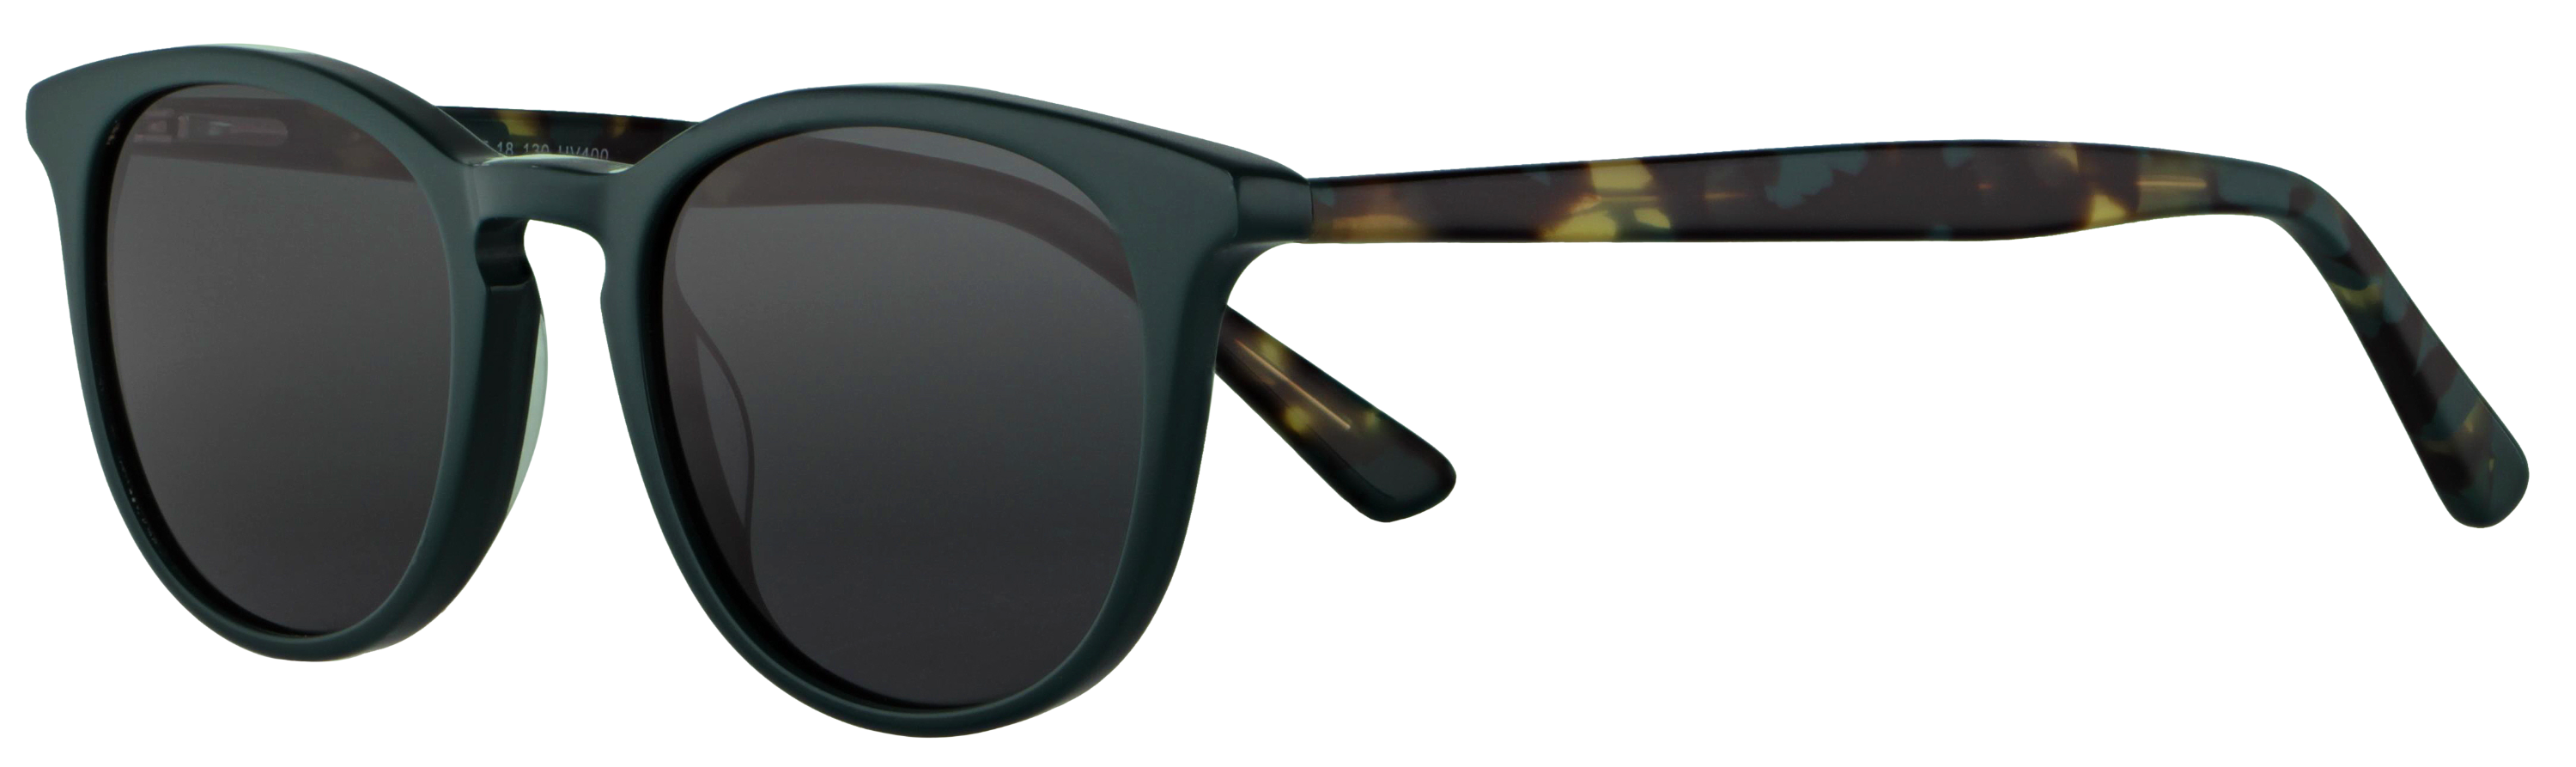 Das Bild zeigt die Sonnenbrille 717881 von der Marke Abele Optik in dunkelgrün.